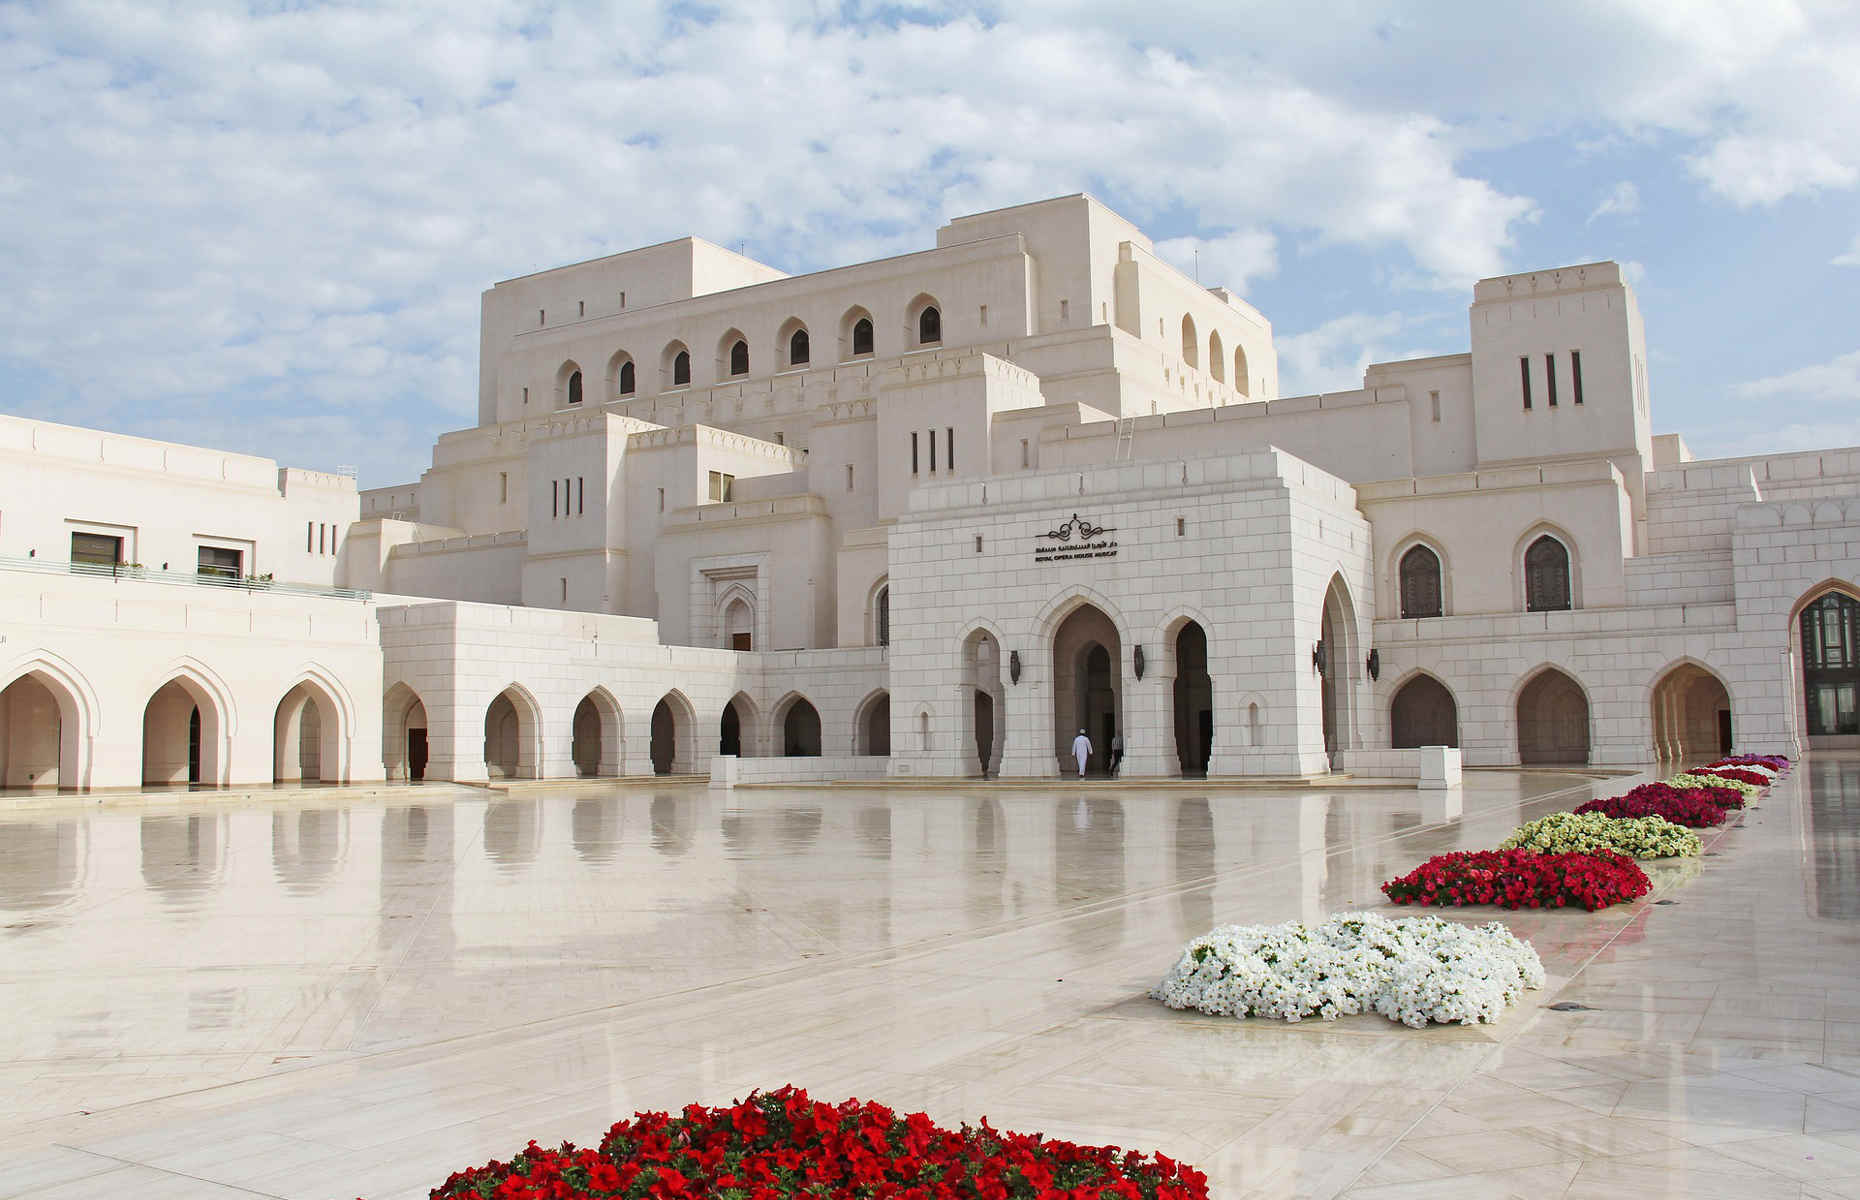 Royal Opera House Oman